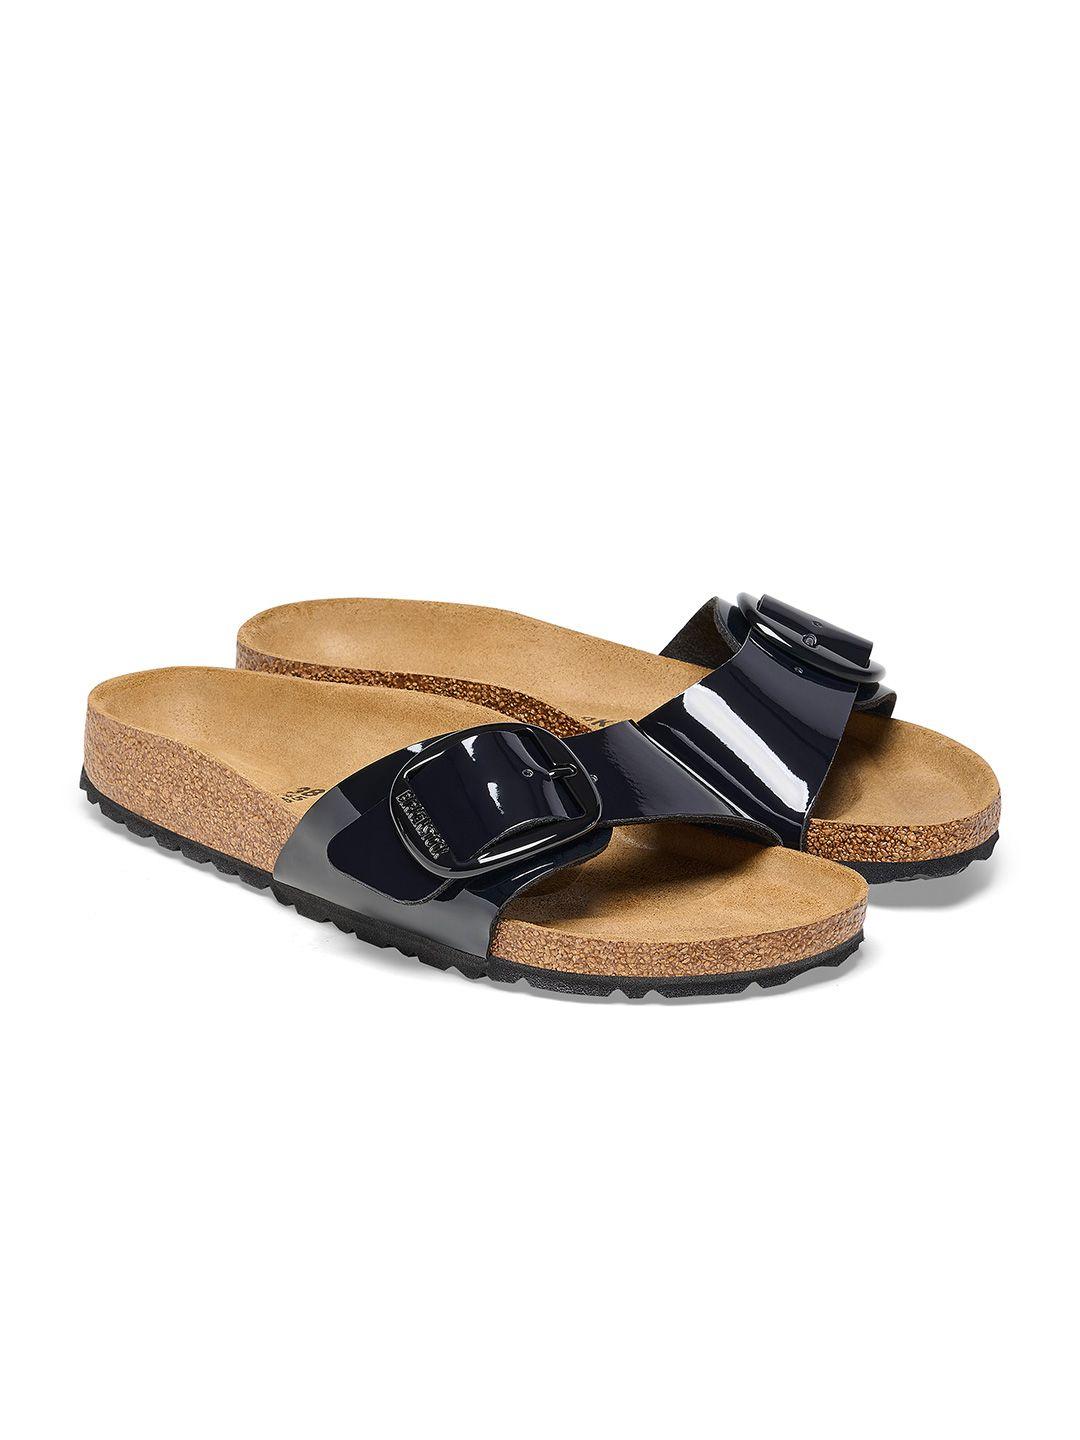 birkenstock men comfort sandals